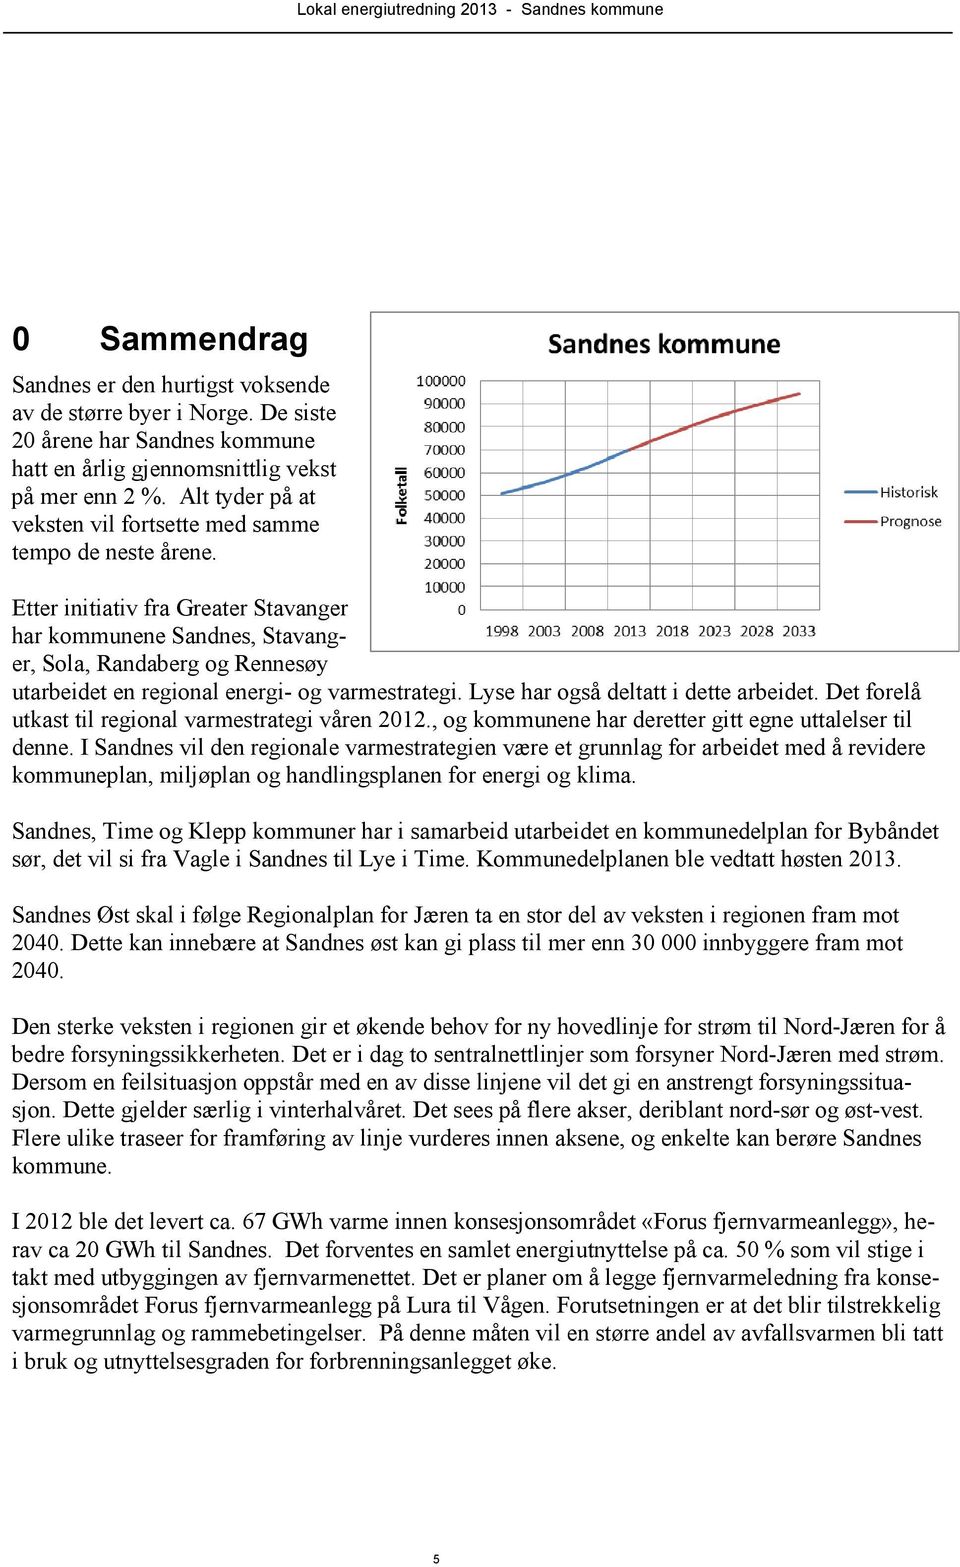 Etter initiativ fra Greater Stavanger har kommunene Sandnes, Stavanger, Sola, Randaberg og Rennesøy utarbeidet en regional energi- og varmestrategi. Lyse har også deltatt i dette arbeidet.